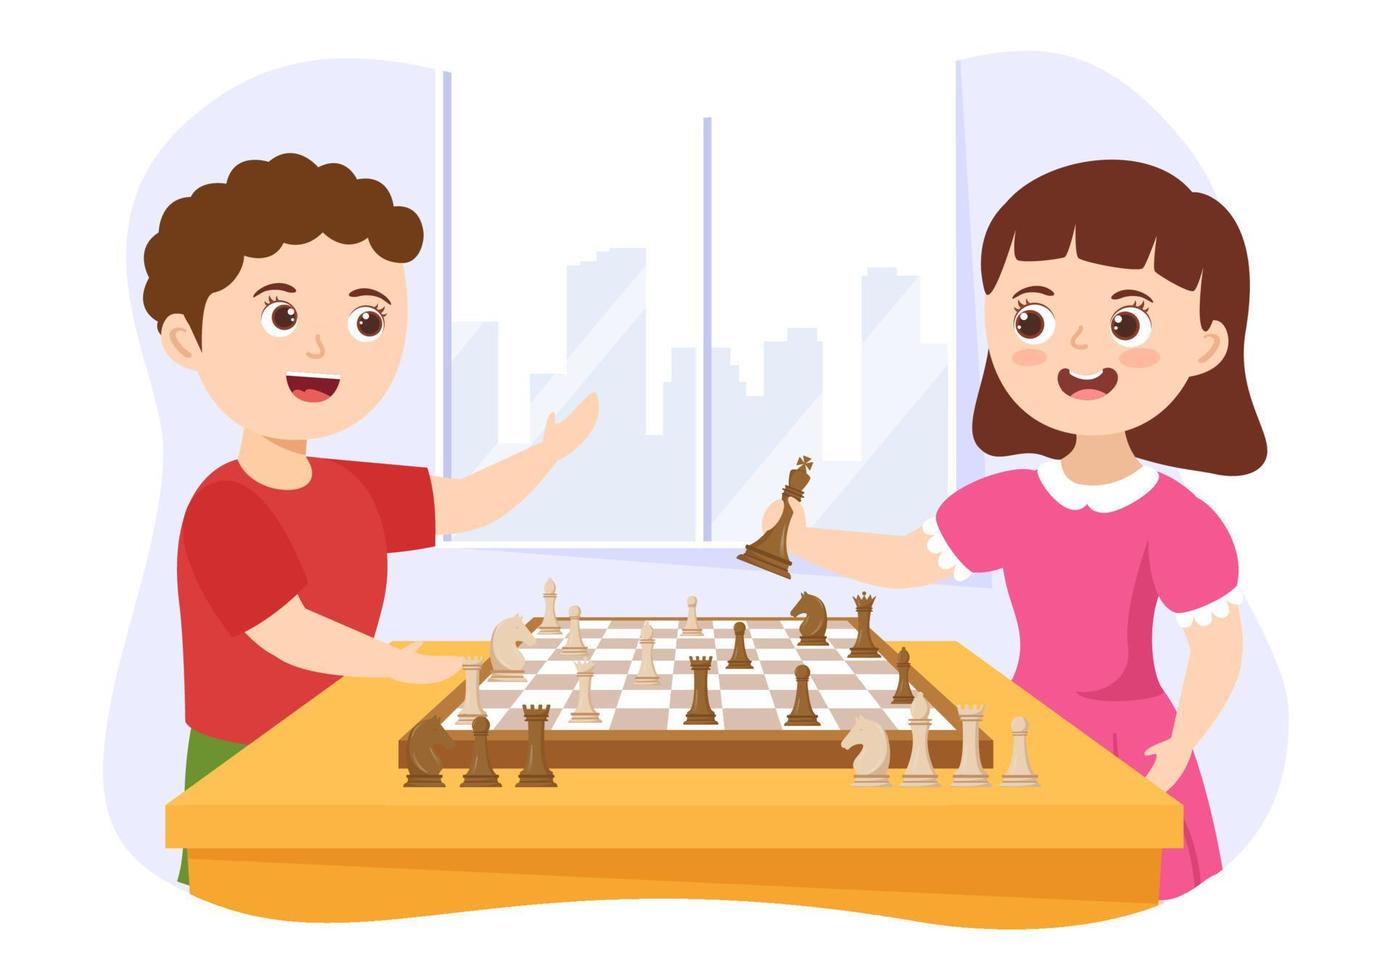 illustration de jeu d'échecs avec des enfants assis en face et jouant pour une bannière web ou une page de destination en illustration de modèles dessinés à la main de dessin animé plat vecteur